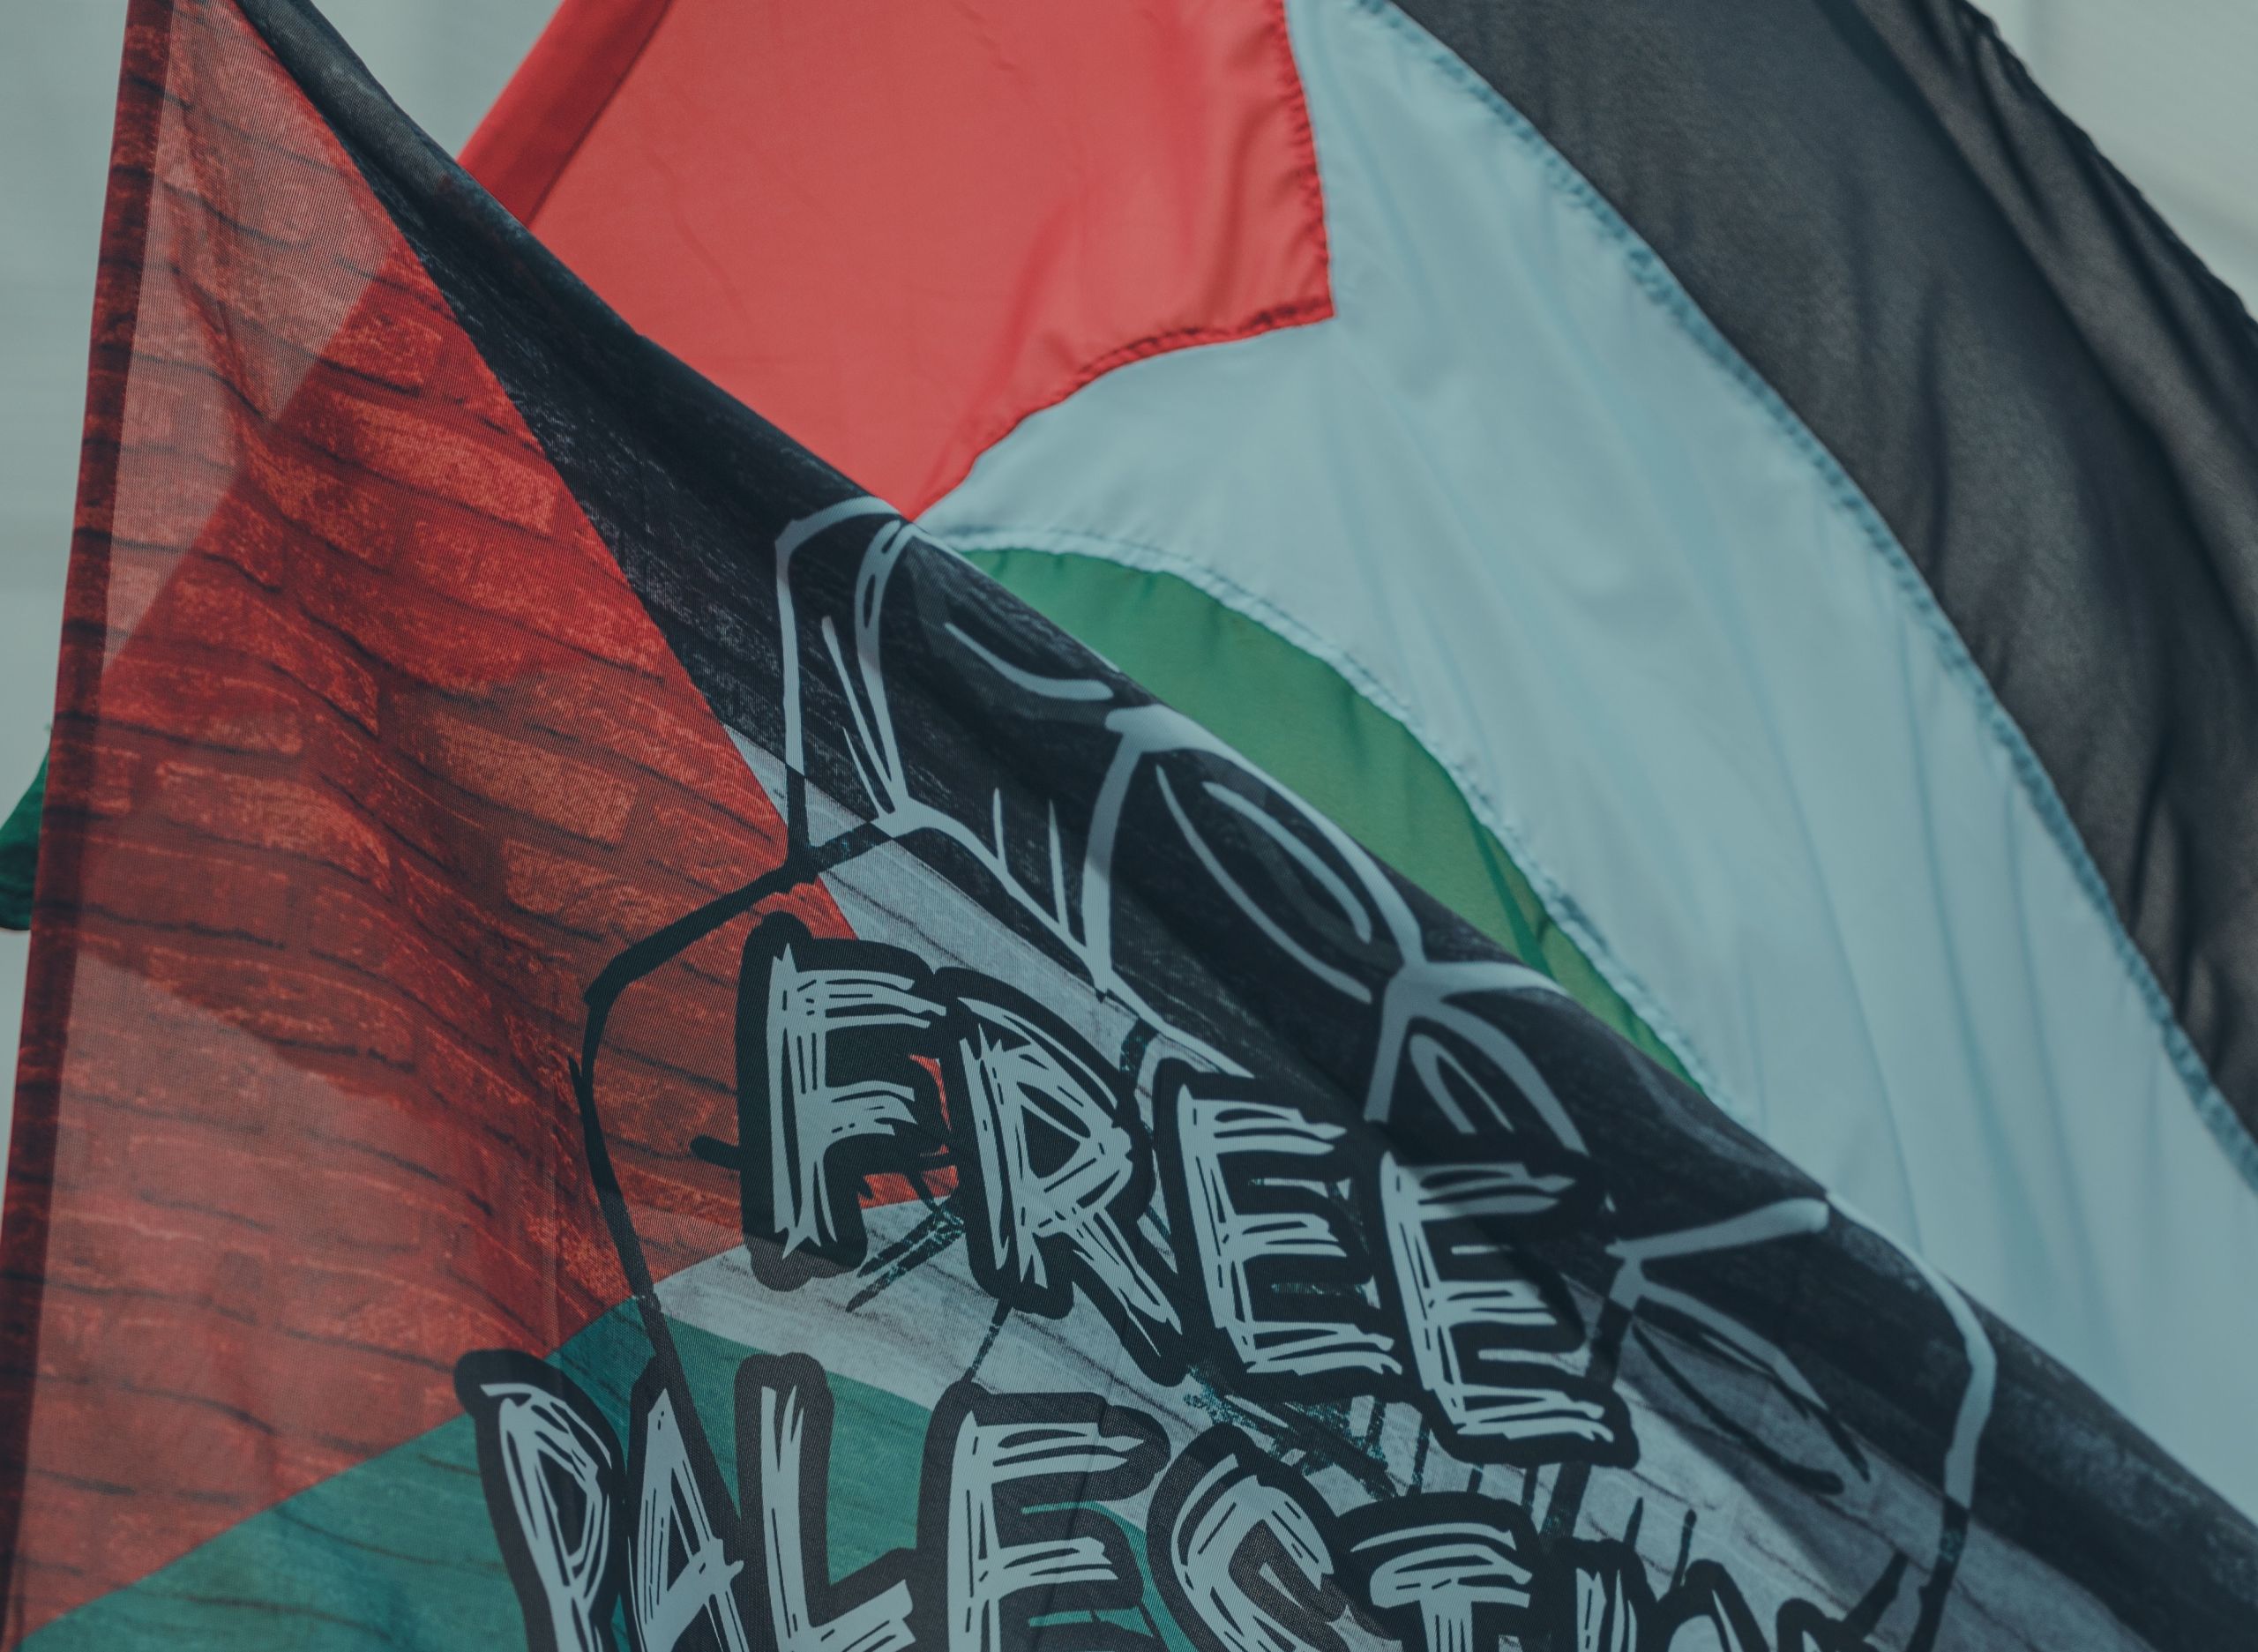 Σίμος Ρούσσος Παλαιστίνη: Ο δήμαρχος Χαλανδρίου παίρνει θέση για τον πόλεμο